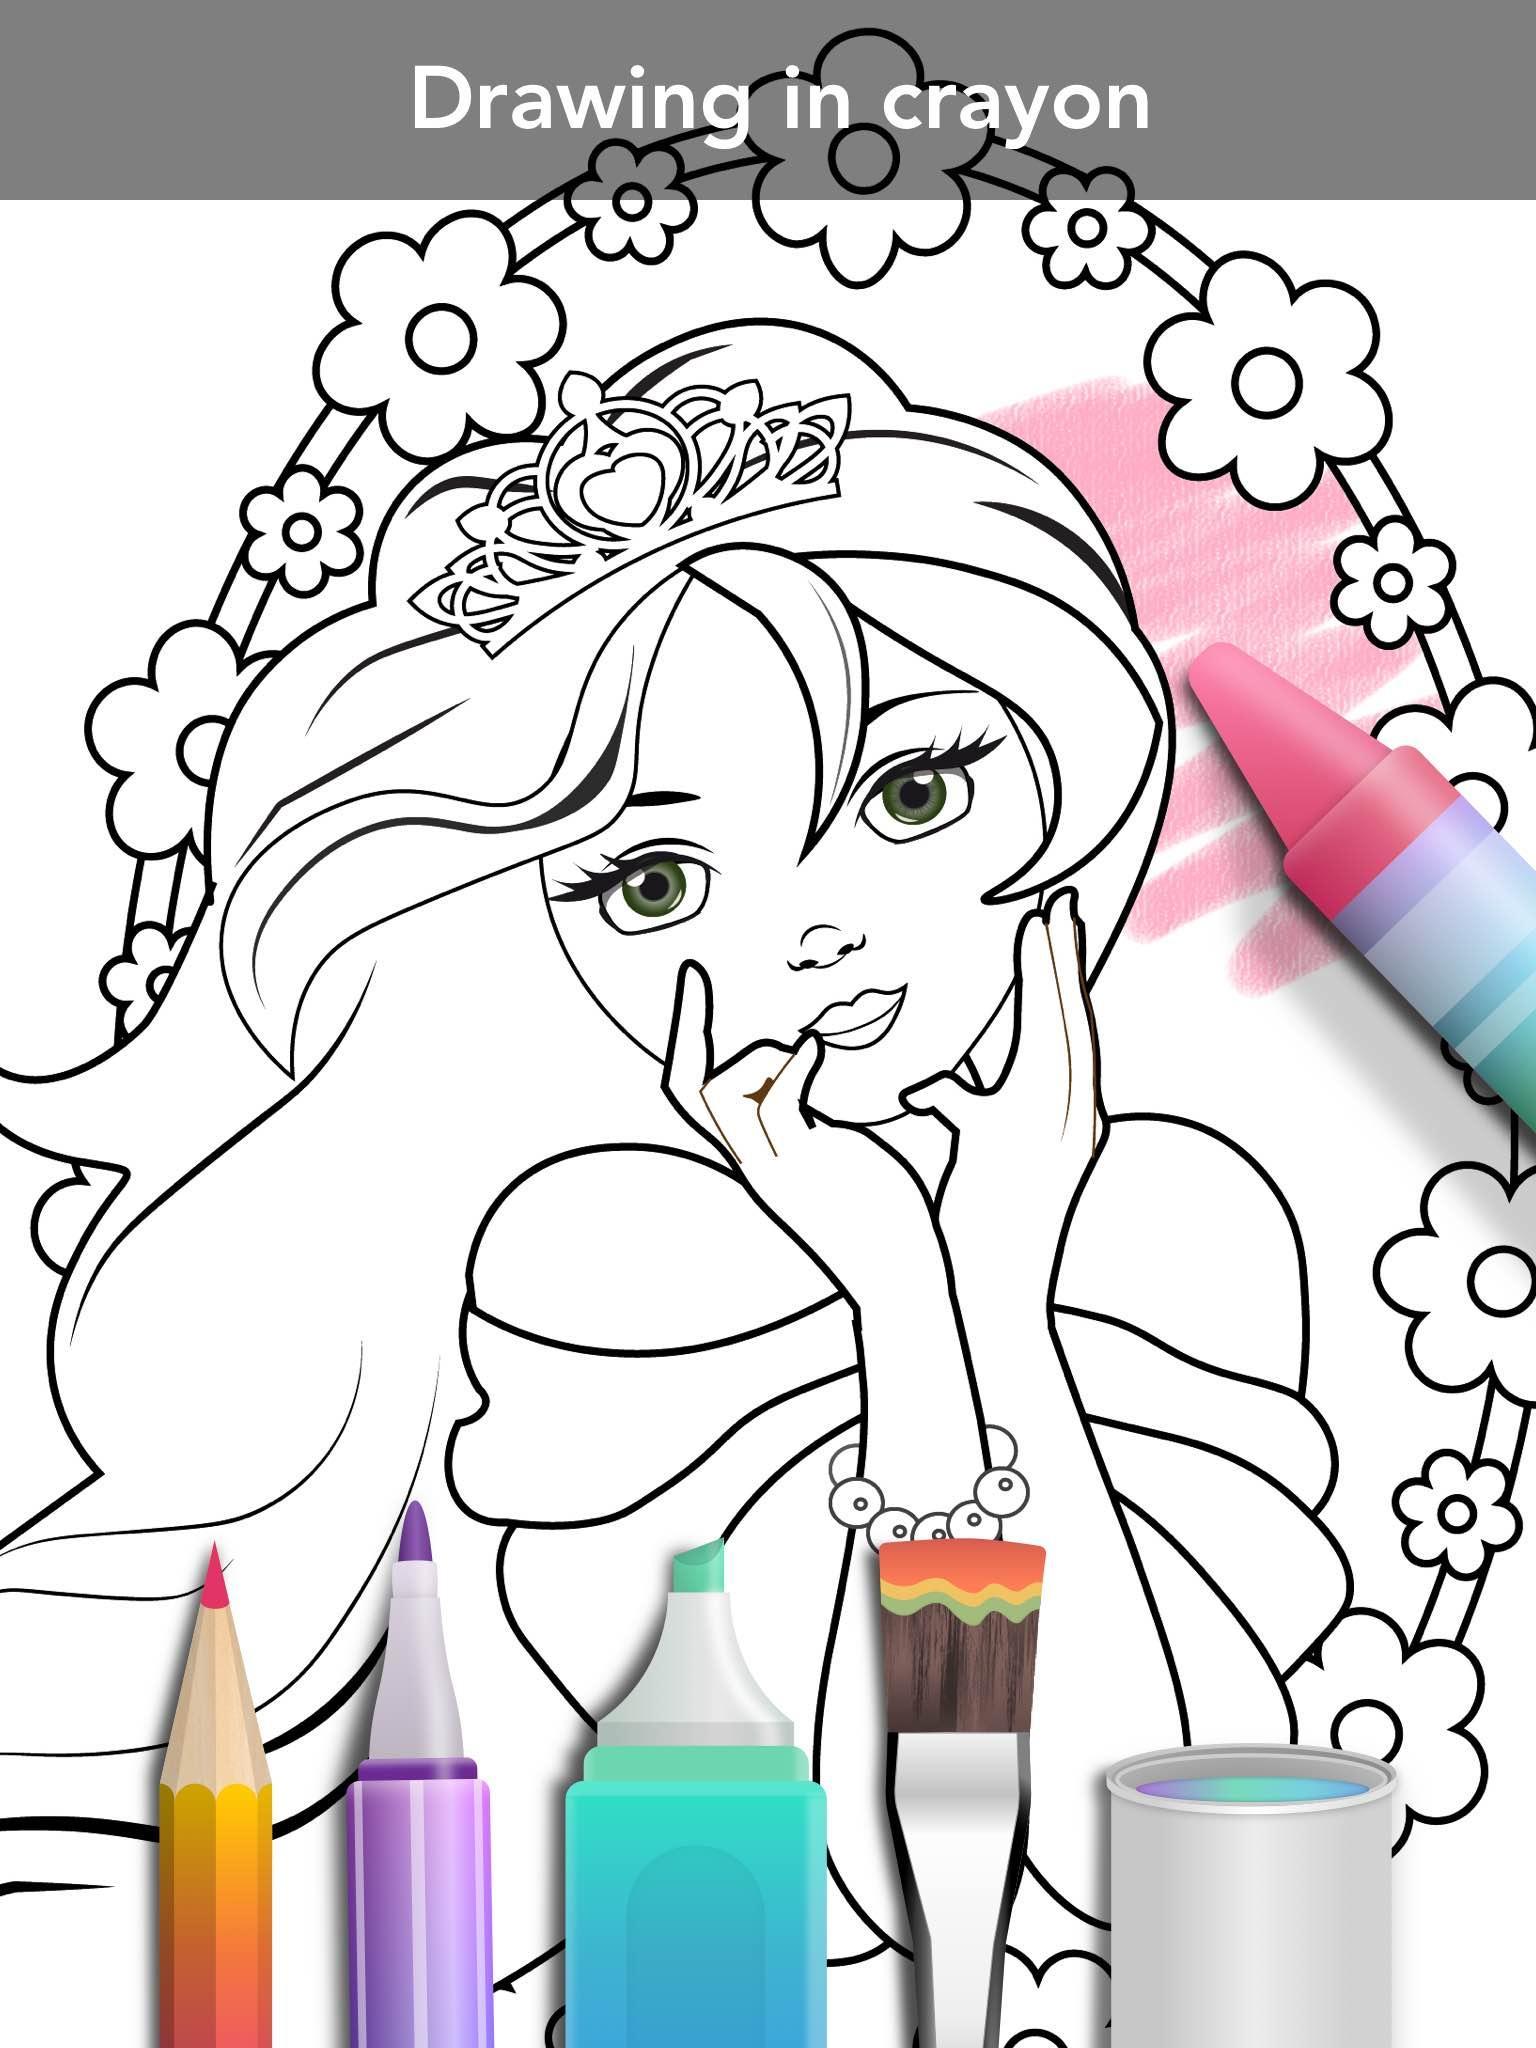 Princess coloring bookのキャプチャ